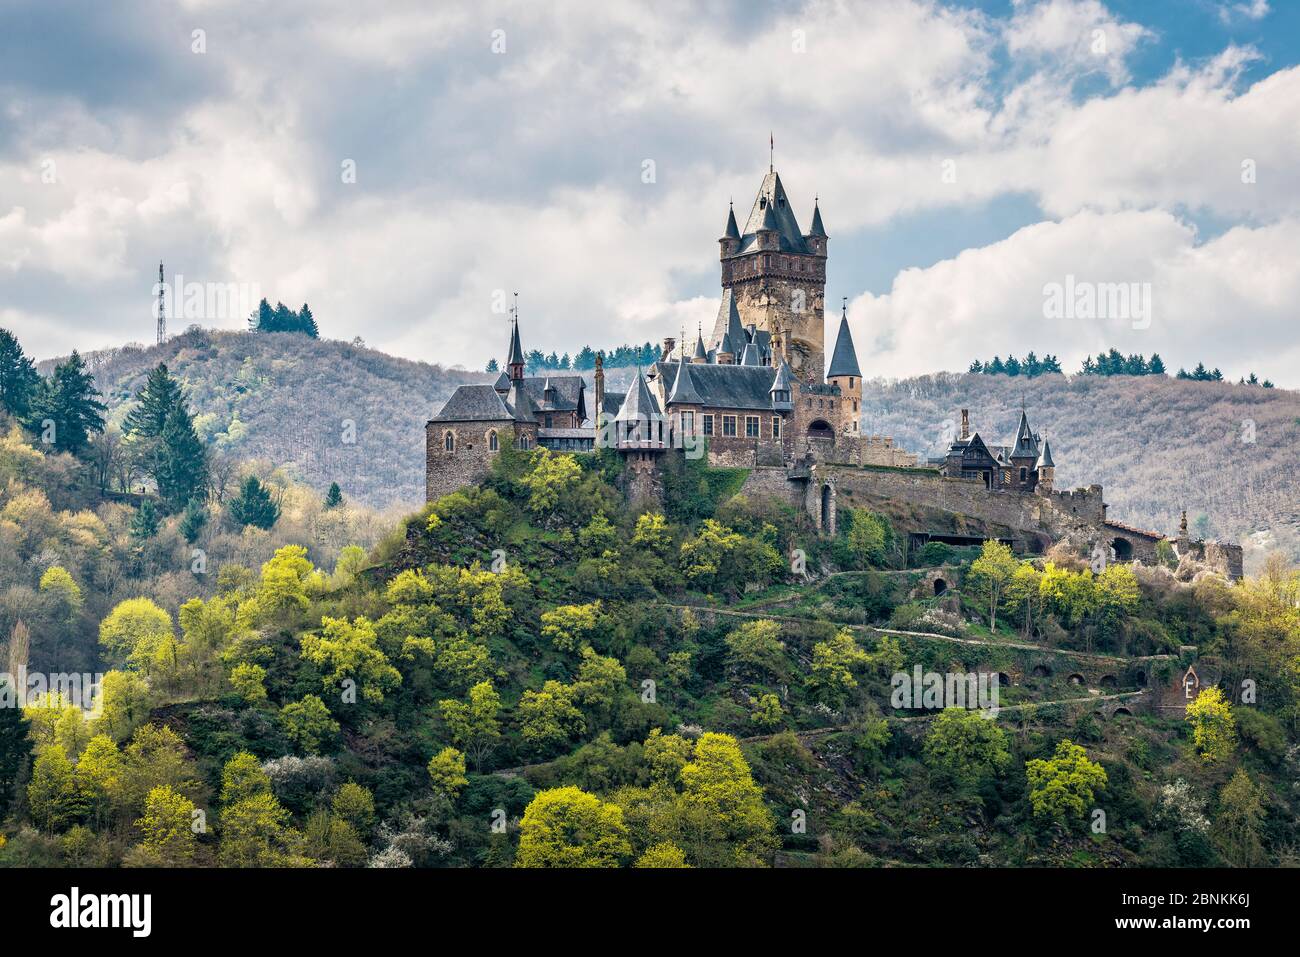 Reichsburg Cochem, castillo romance en el Mosela, símbolo y patrimonio cultural en el sentido de la Convención de la haya. Foto de stock